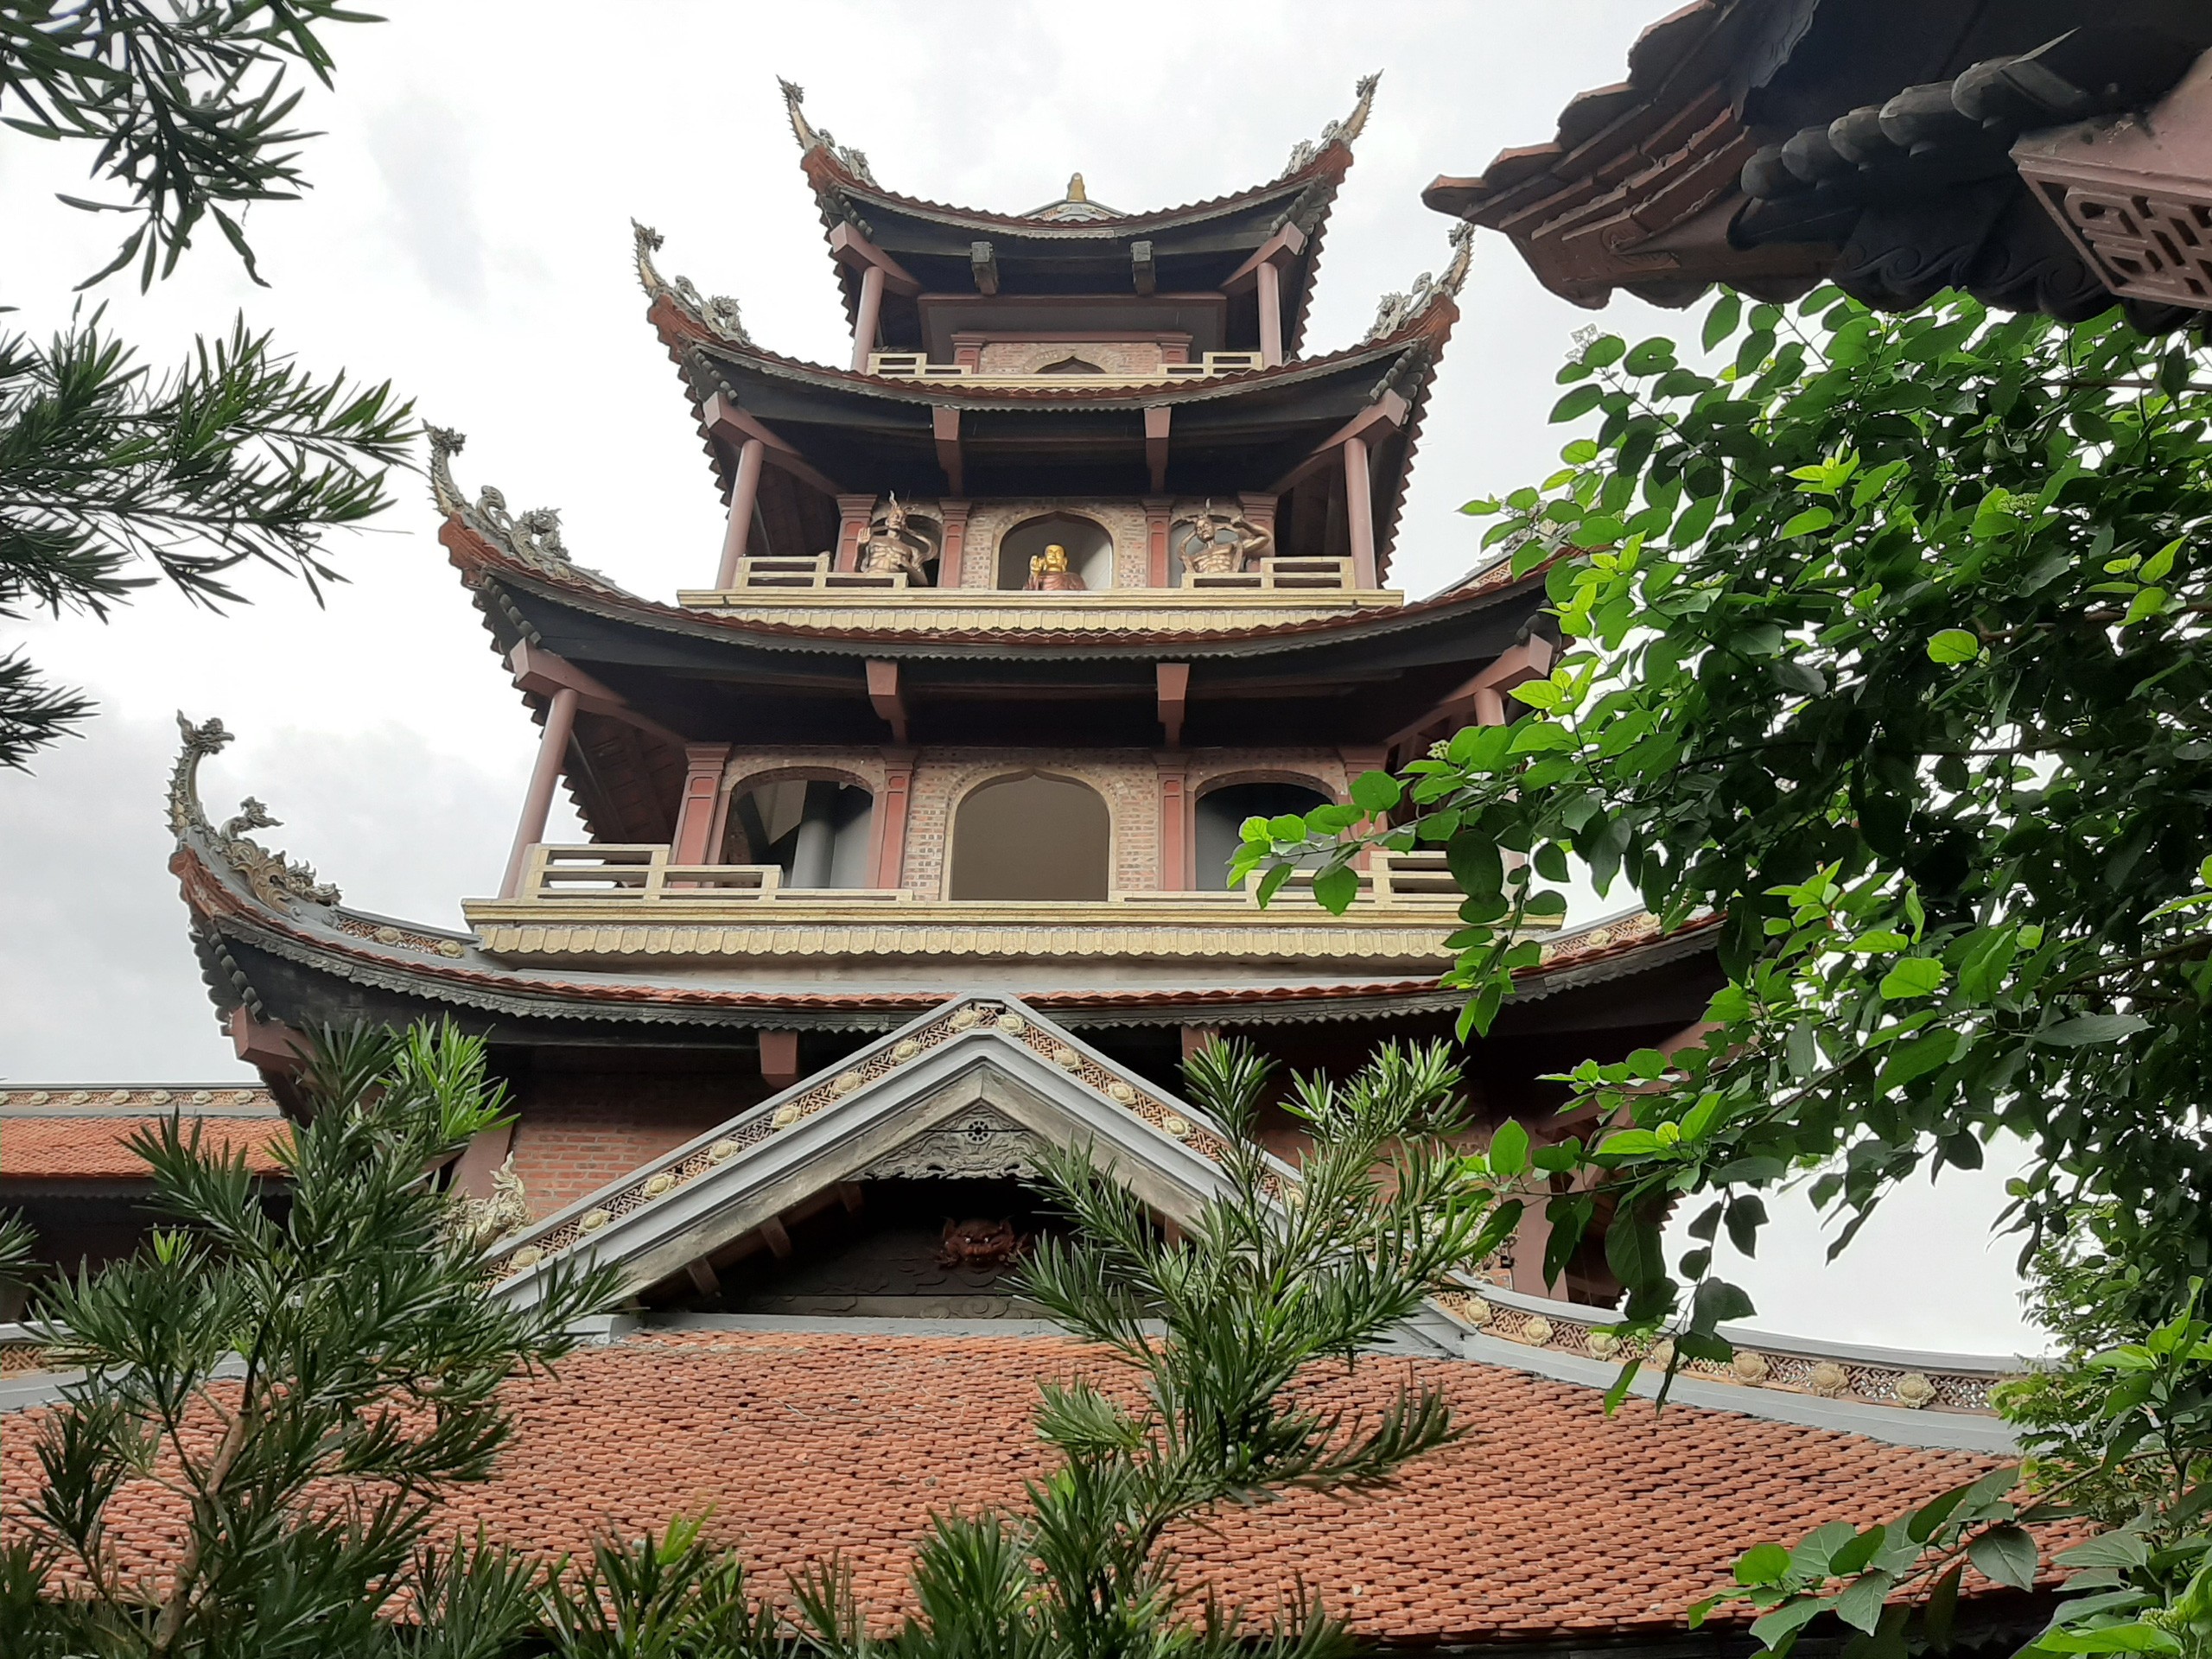 Ngỡ ngàng trước vẻ đẹp độc đáo của ngôi chùa gốm sứ ở Bát Tràng